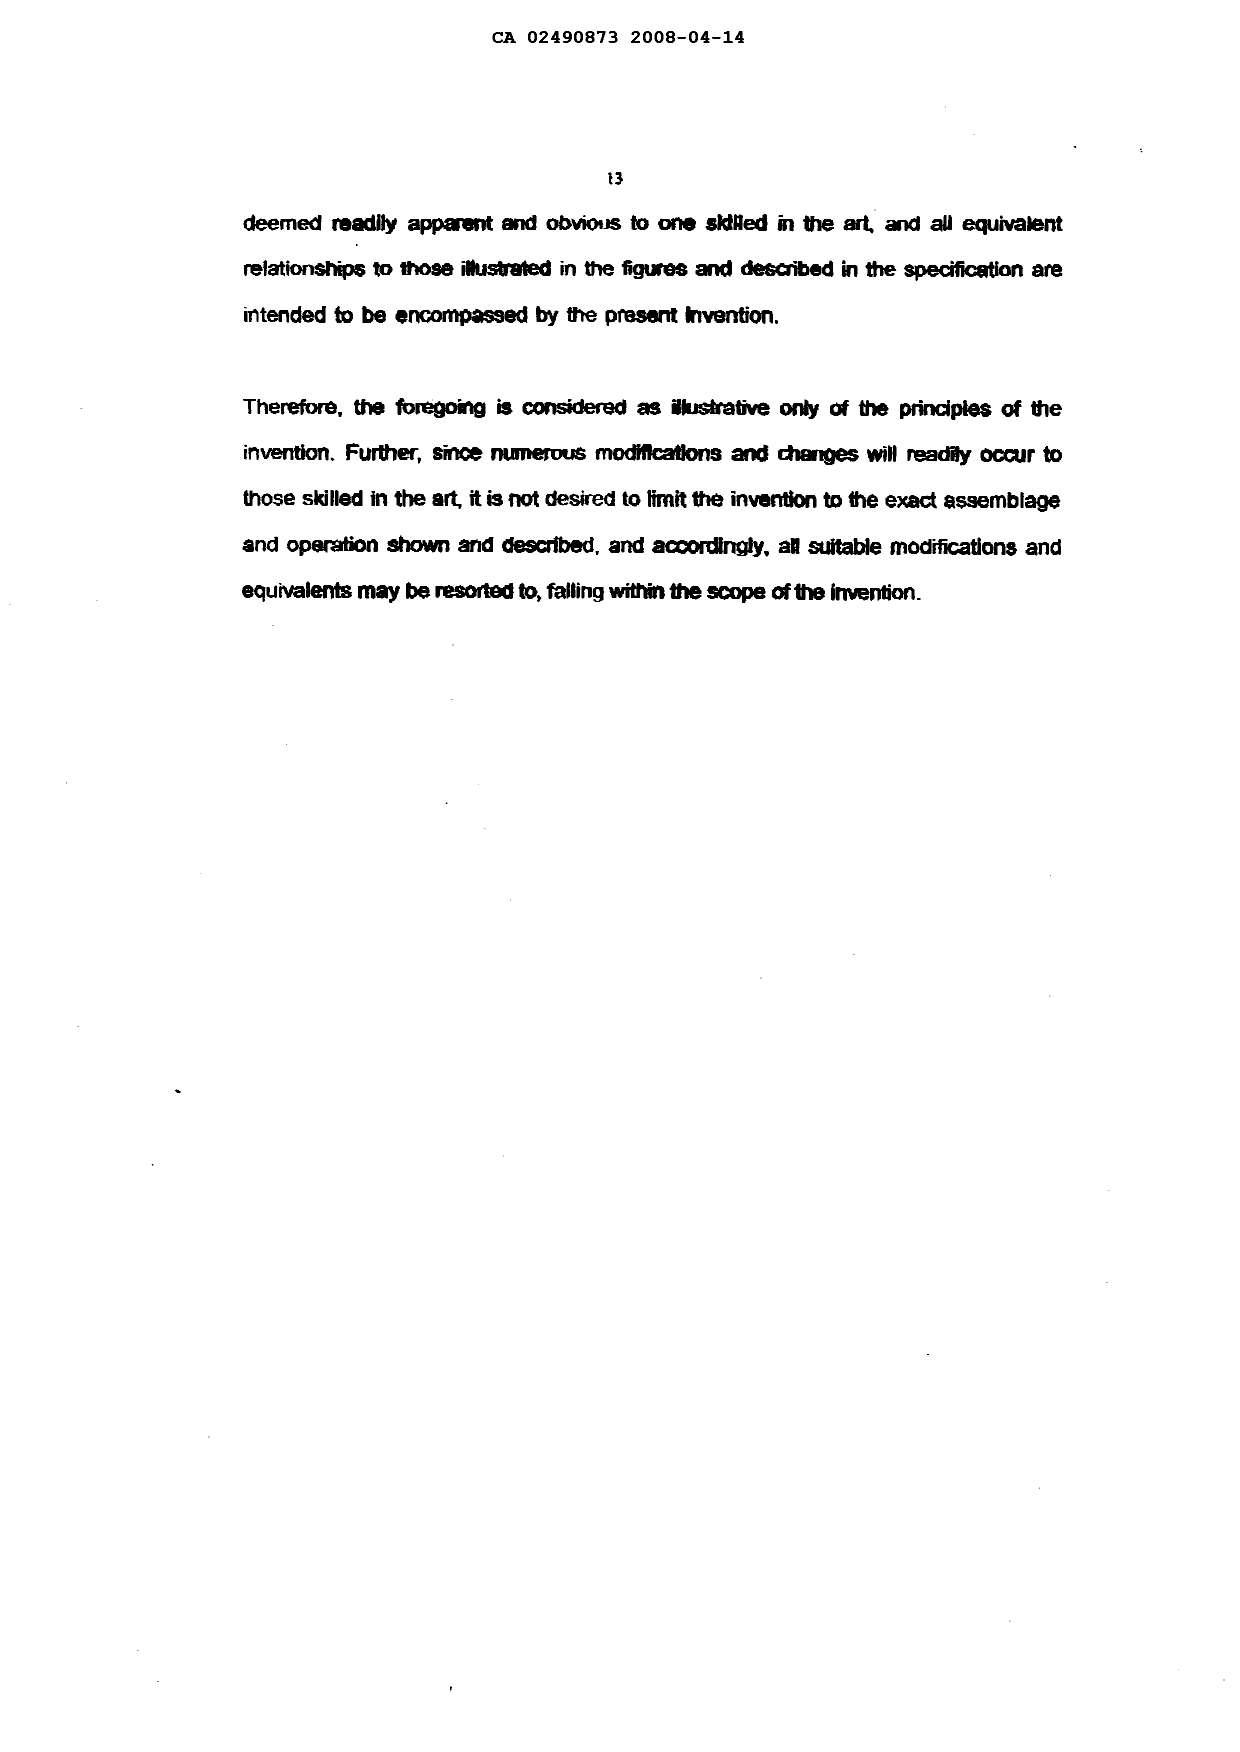 Canadian Patent Document 2490873. Description 20071214. Image 13 of 13